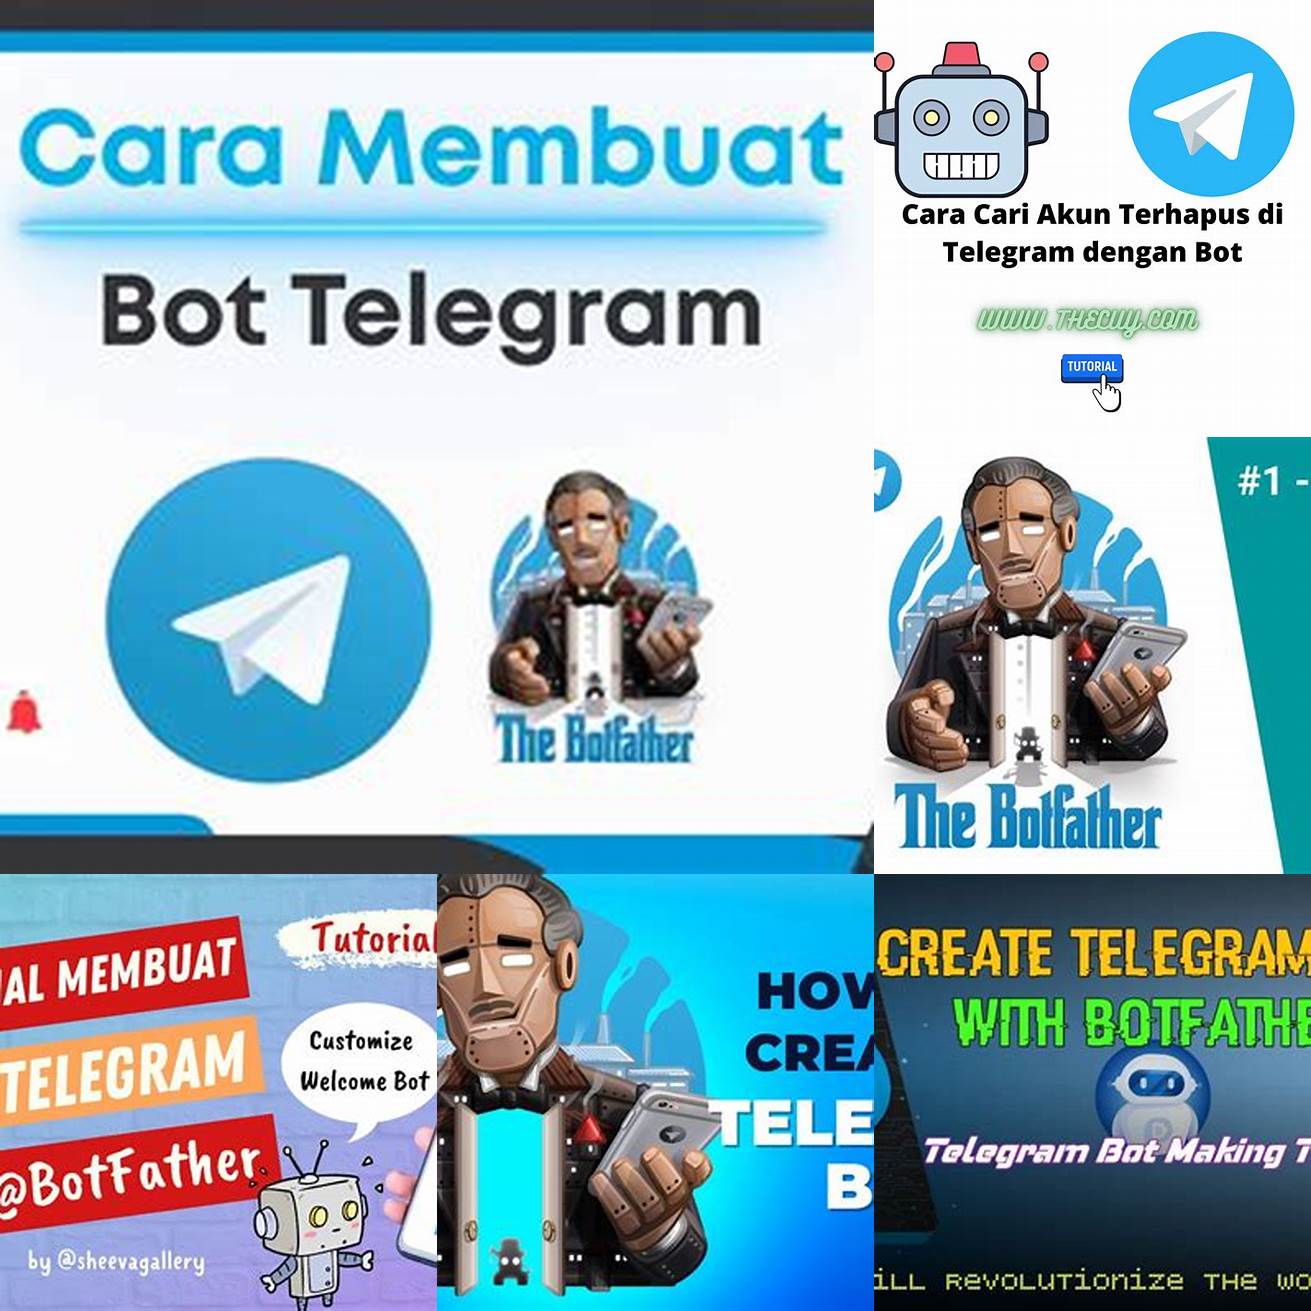 Buat akun Telegram dan aplikasi bot di BotFather